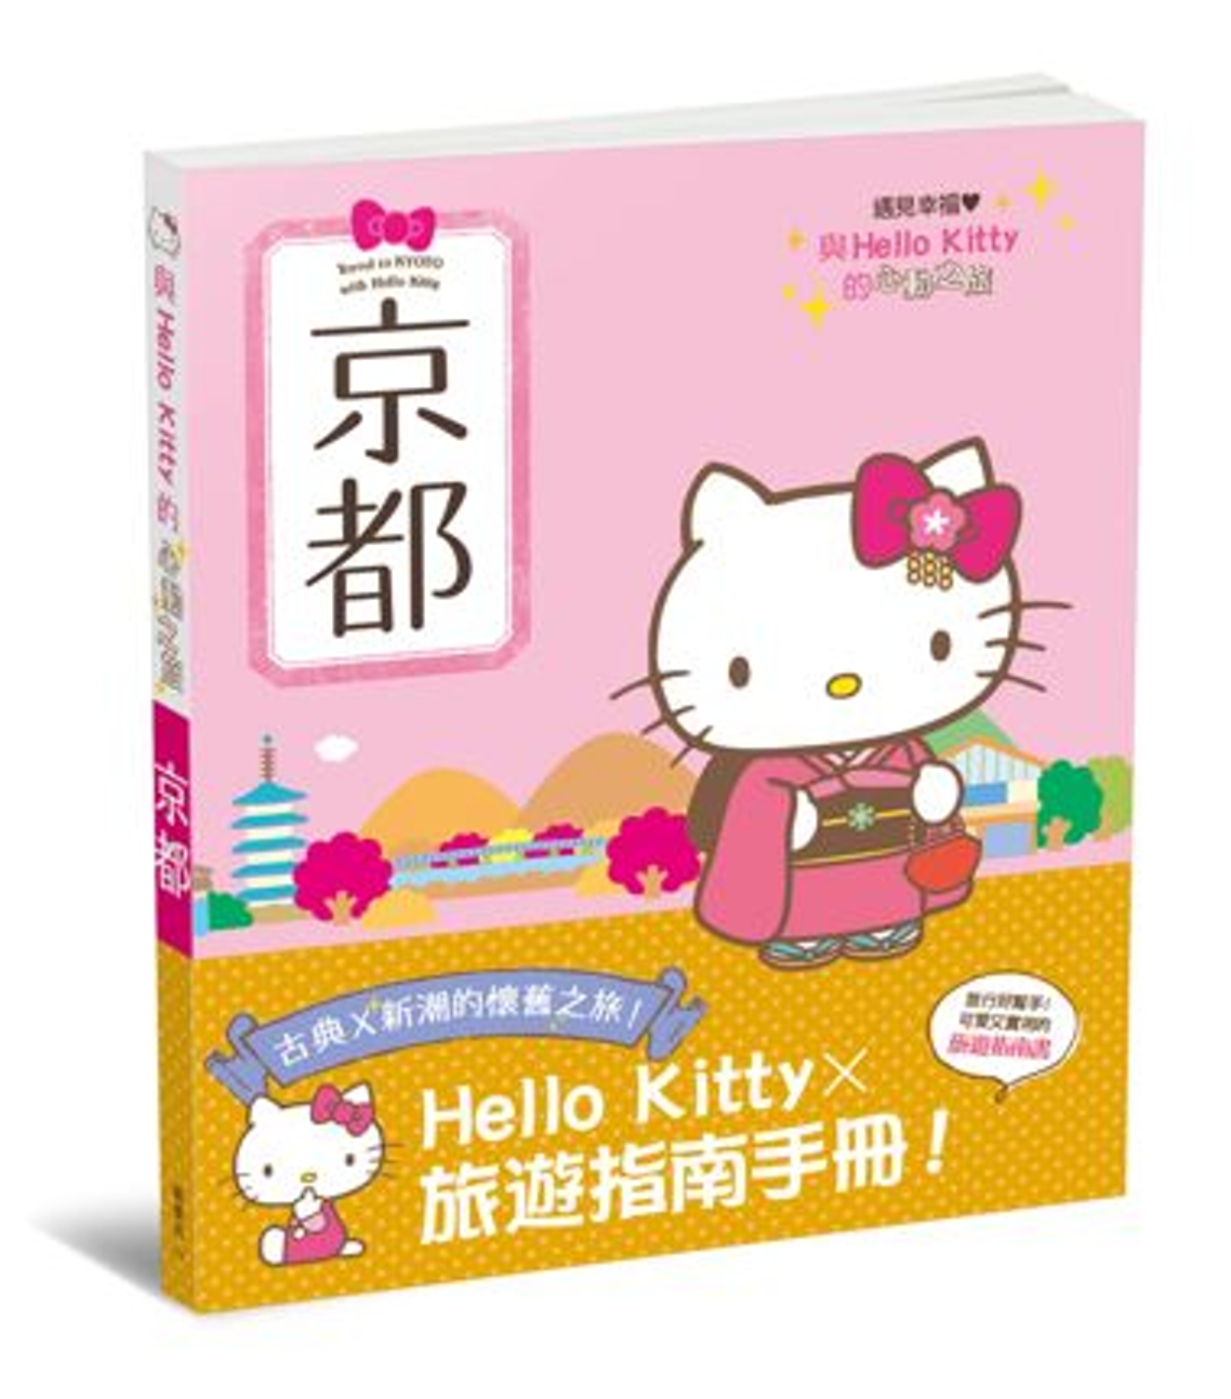 與Hello Kitty的心動之旅 京都(限台灣)